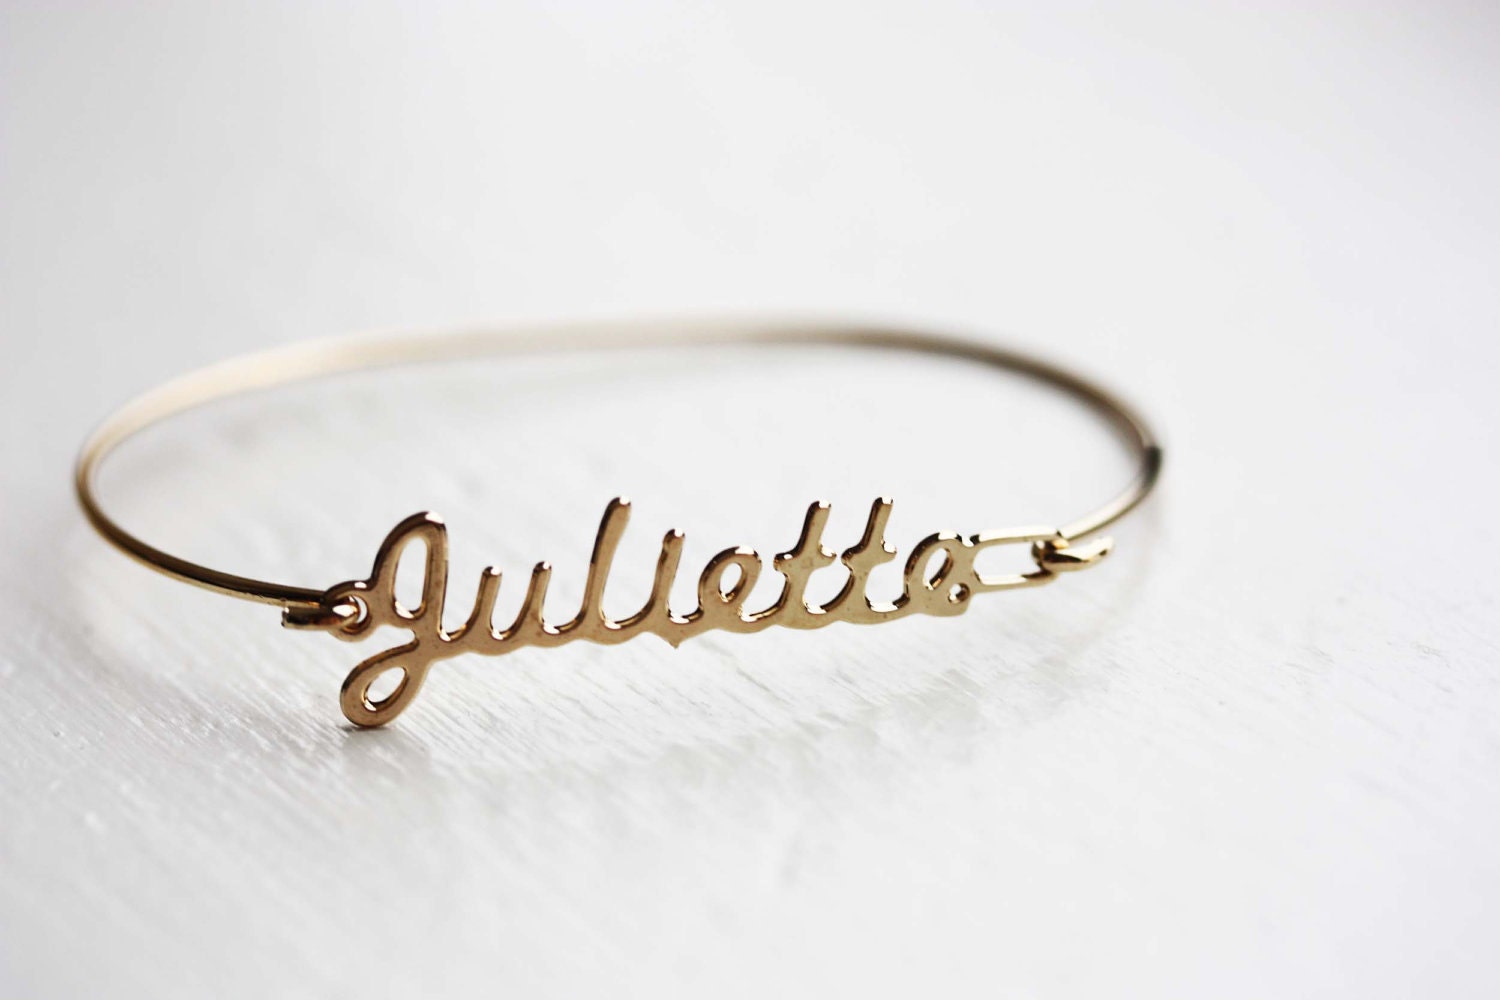 Vintage Name Bracelet - Juliette